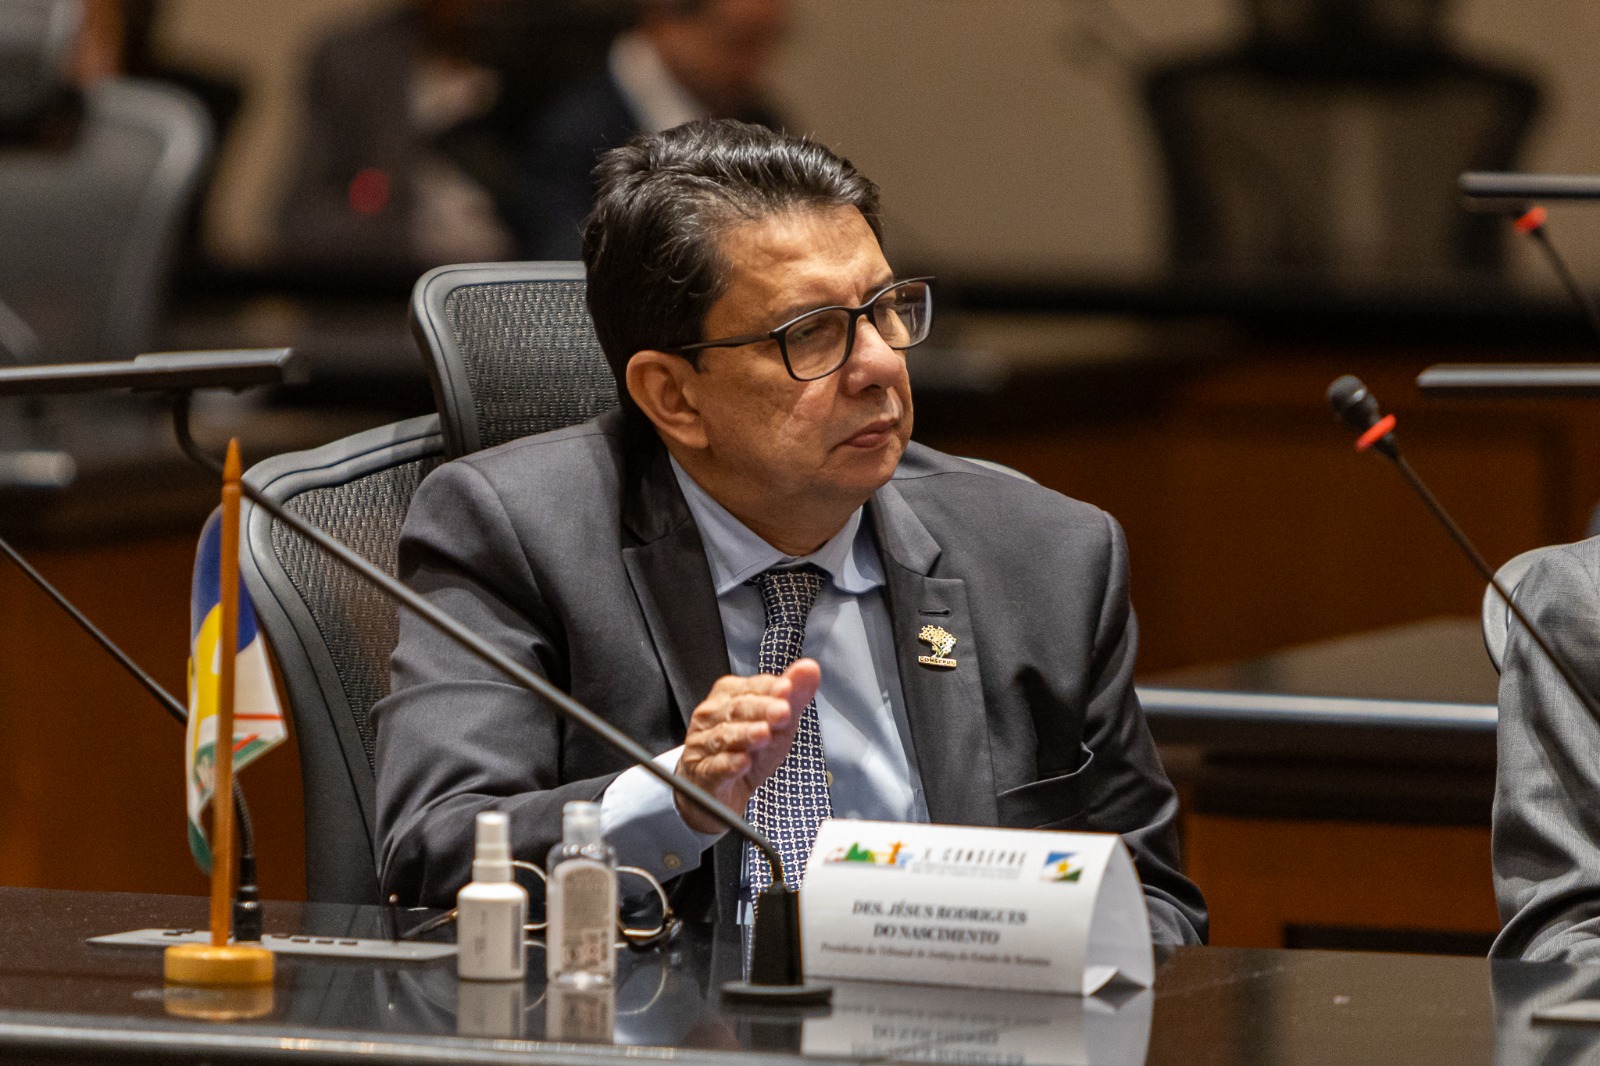 JUDICIÁRIO NACIONAL - Presidente do TJRR participa da abertura do 10º Encontro do Conselho de Presidentes dos tribunais brasileiros  